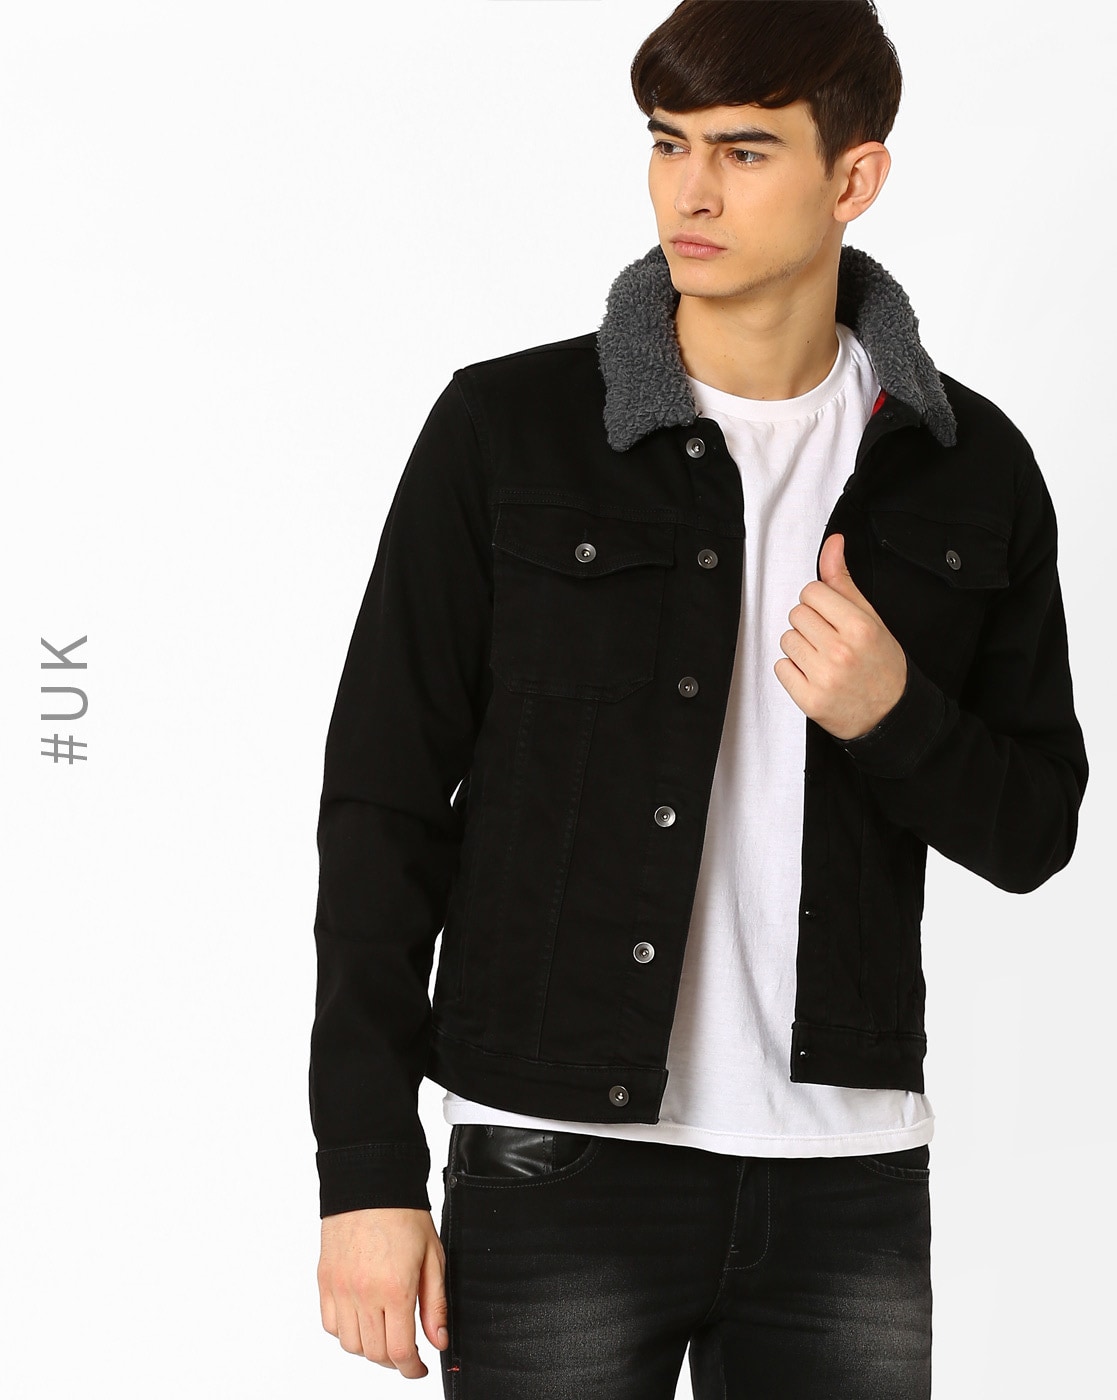 sheepskin jean jacket